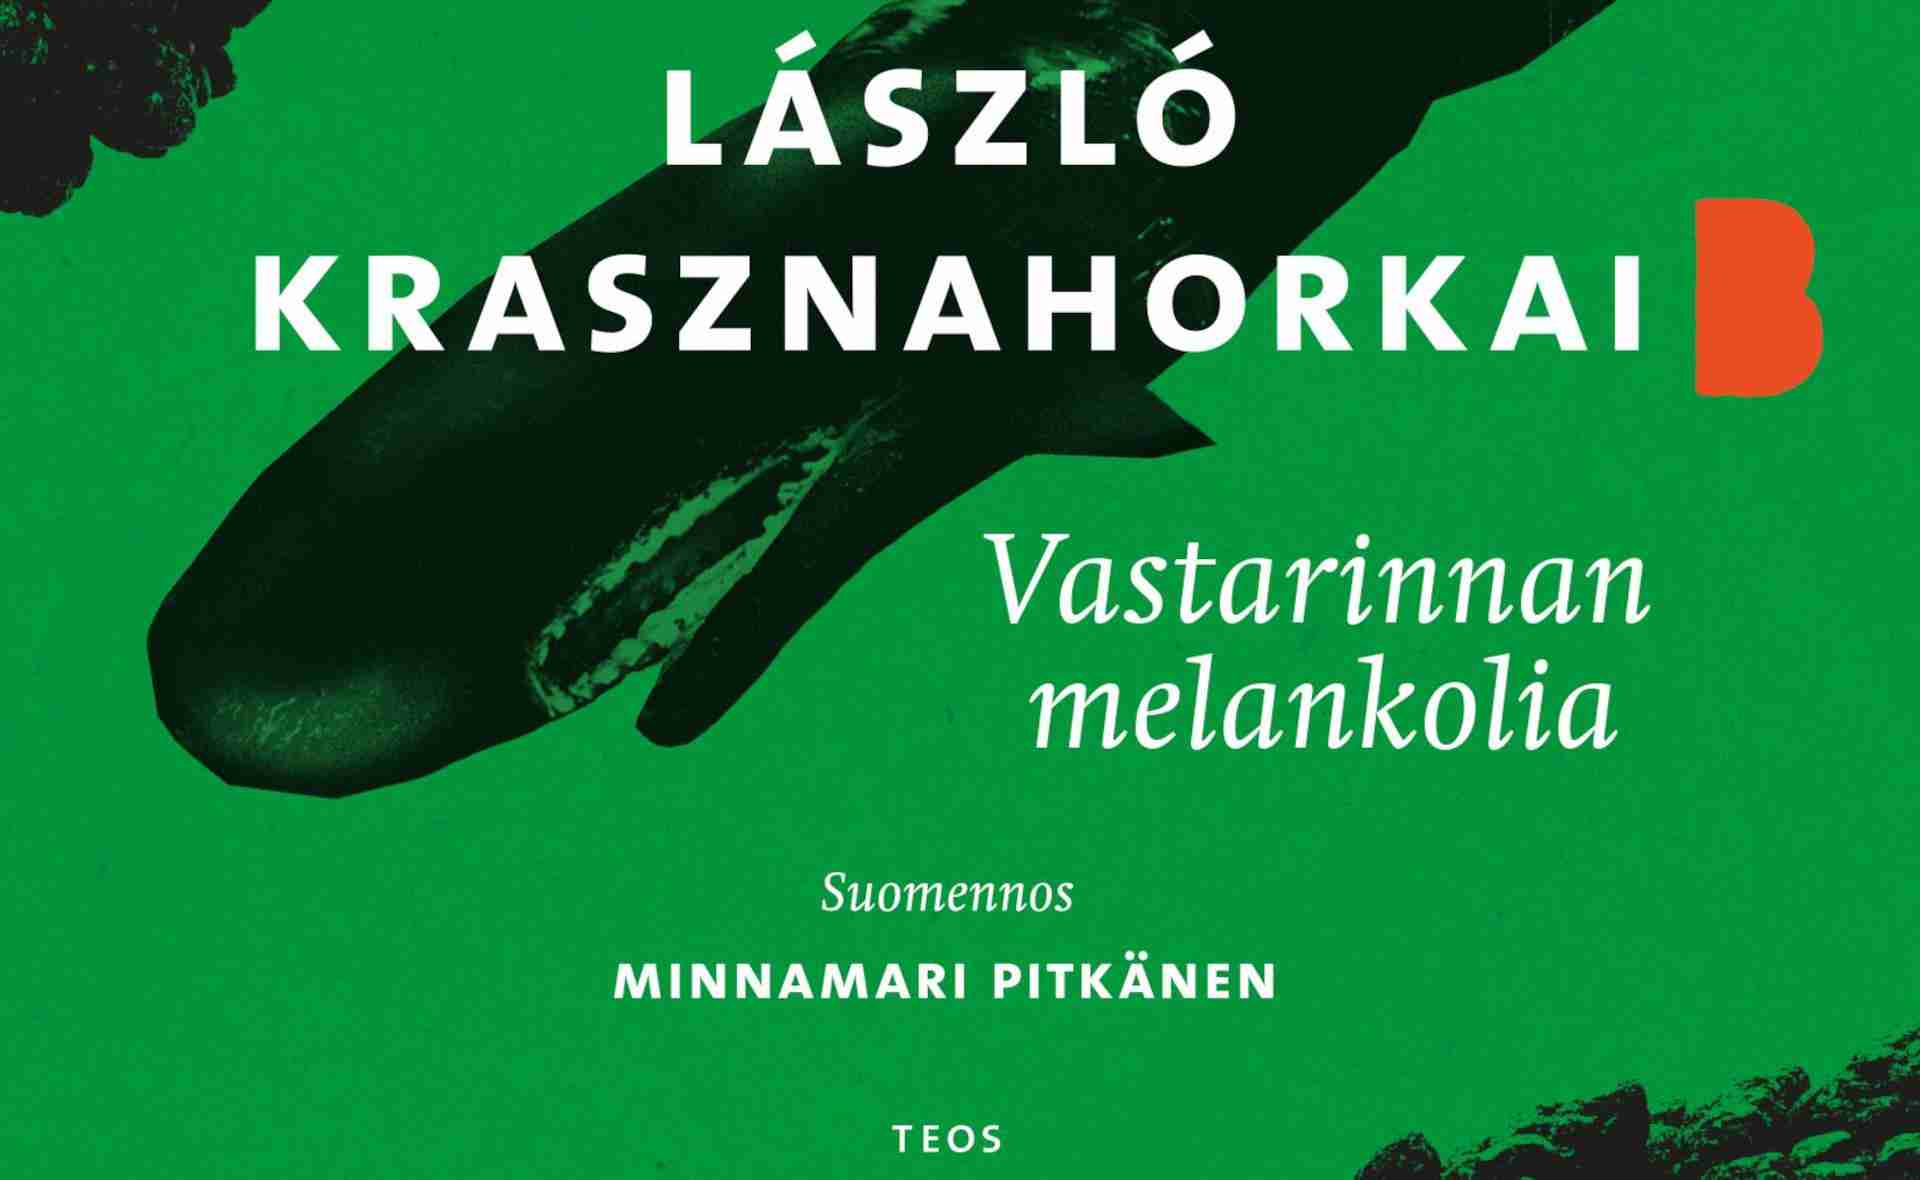 Kääntäjä Minnamari Pitkänen suomensi unkarilaisen László Krasznahorkain Vastarinnan melankolia -teoksen